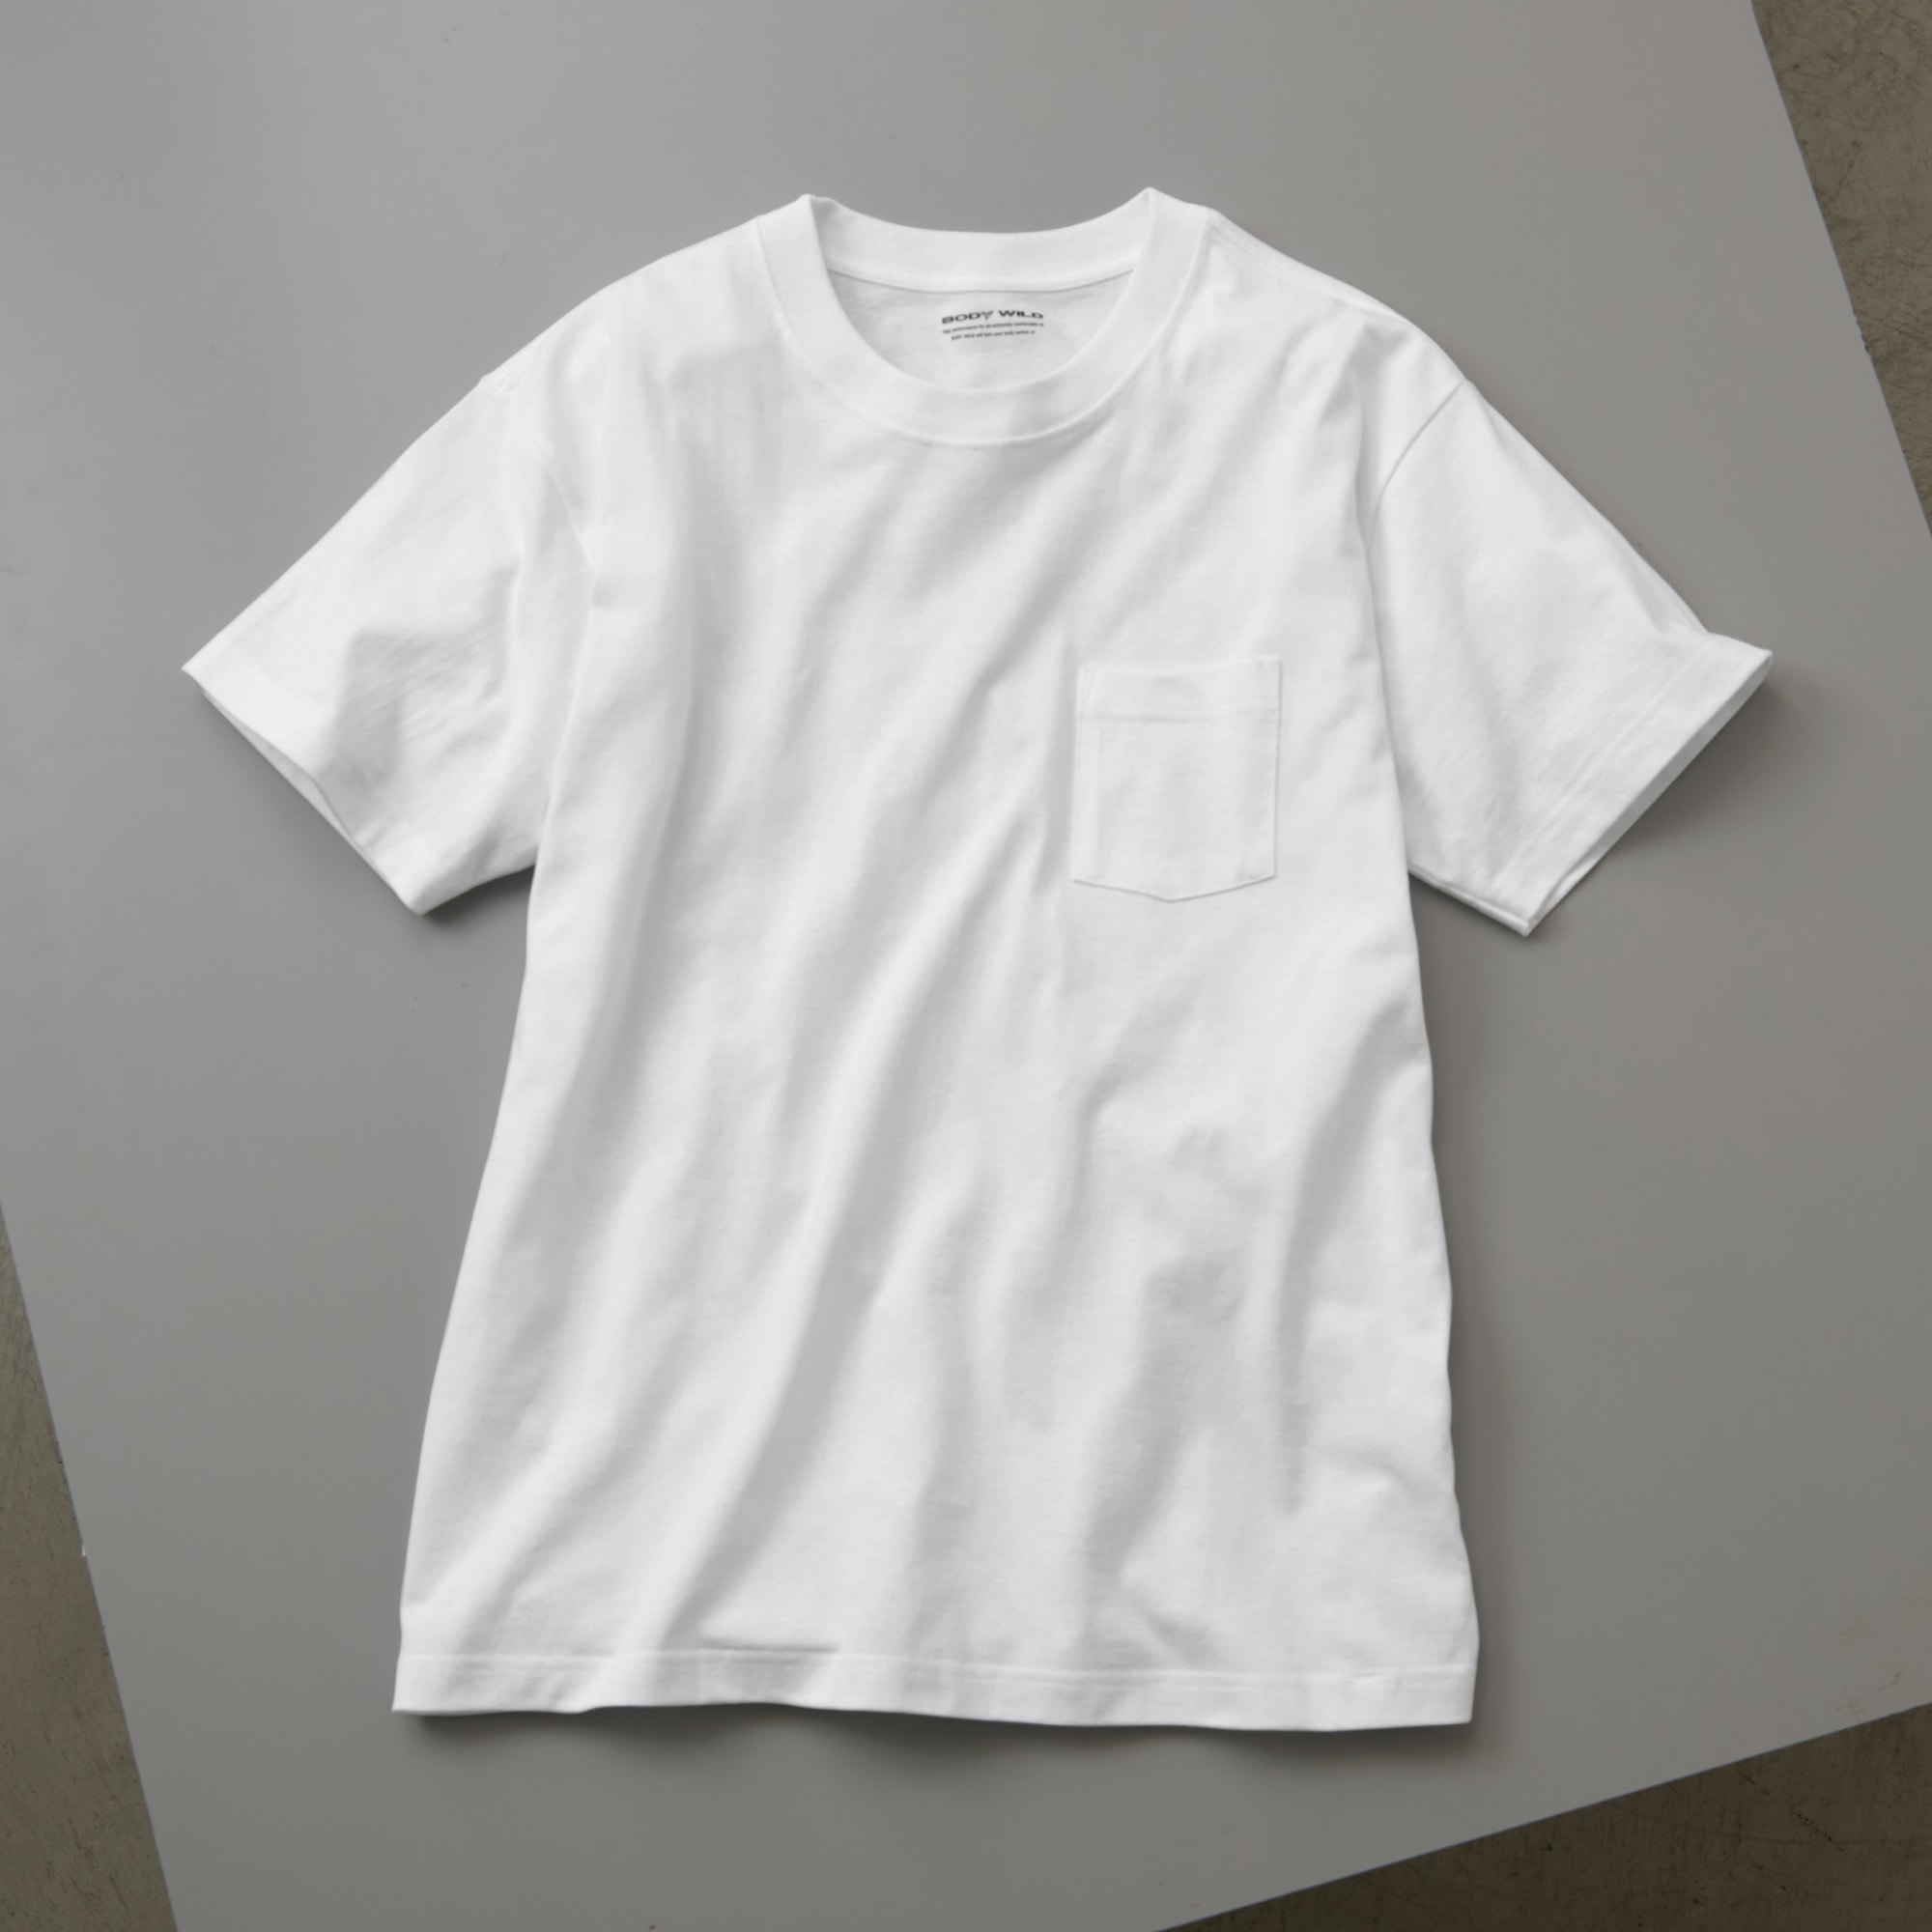 グンゼのアンダーウェアブランド「ボディワイルド」から、アウター用Tシャツが登場